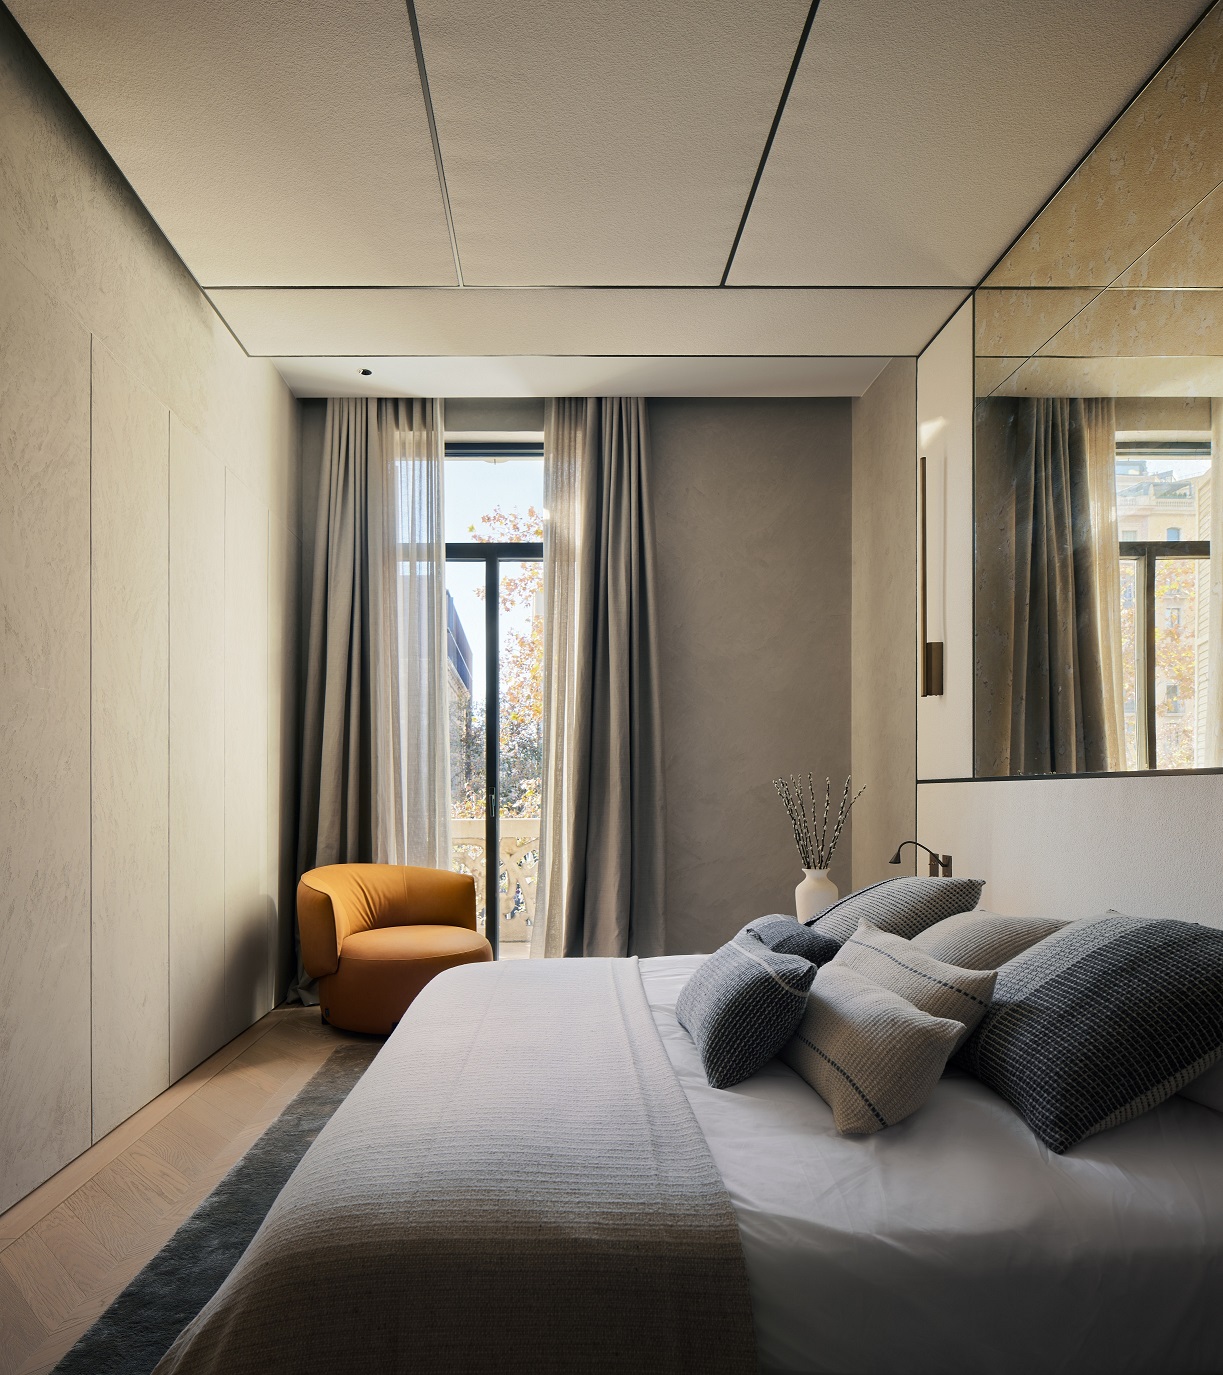 Paseo de Gracia Apartment LUV Studio Pol Viladoms Master Bedroom 1 - LUV Studio - Arquitectura y diseño - Barcelona